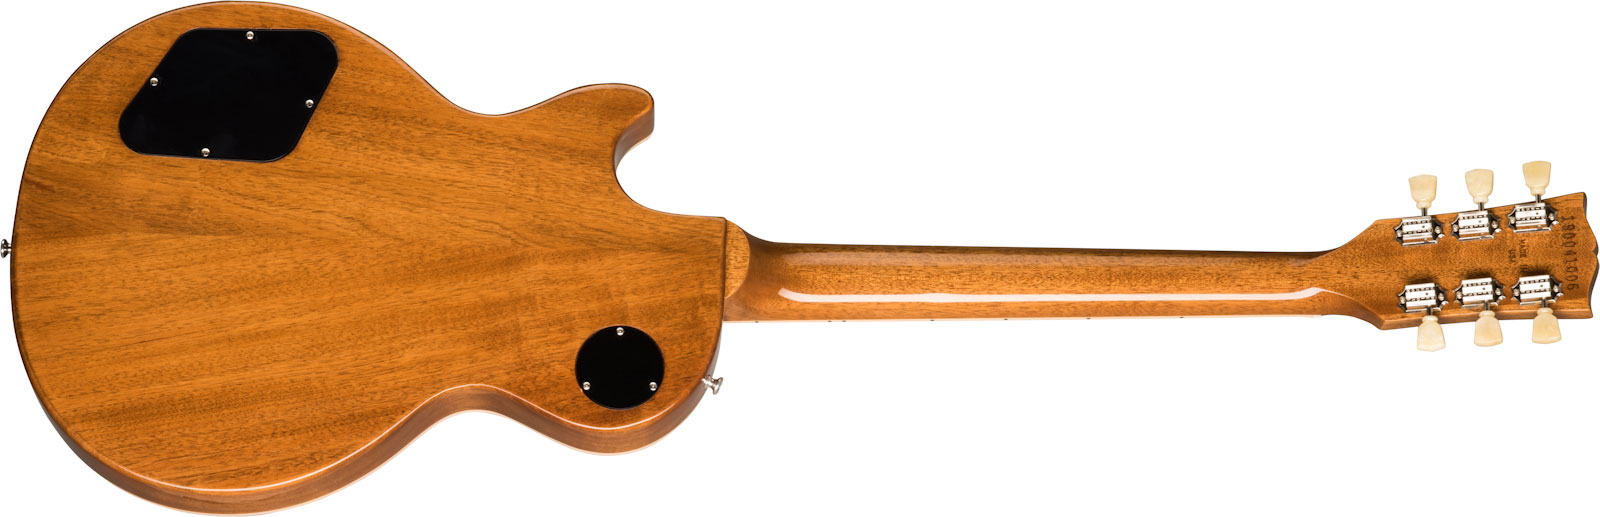 Gibson Les Paul Standard 50s Lh Original Gaucher 2h Ht Rw - Gold Top - Linkshandige elektrische gitaar - Variation 1